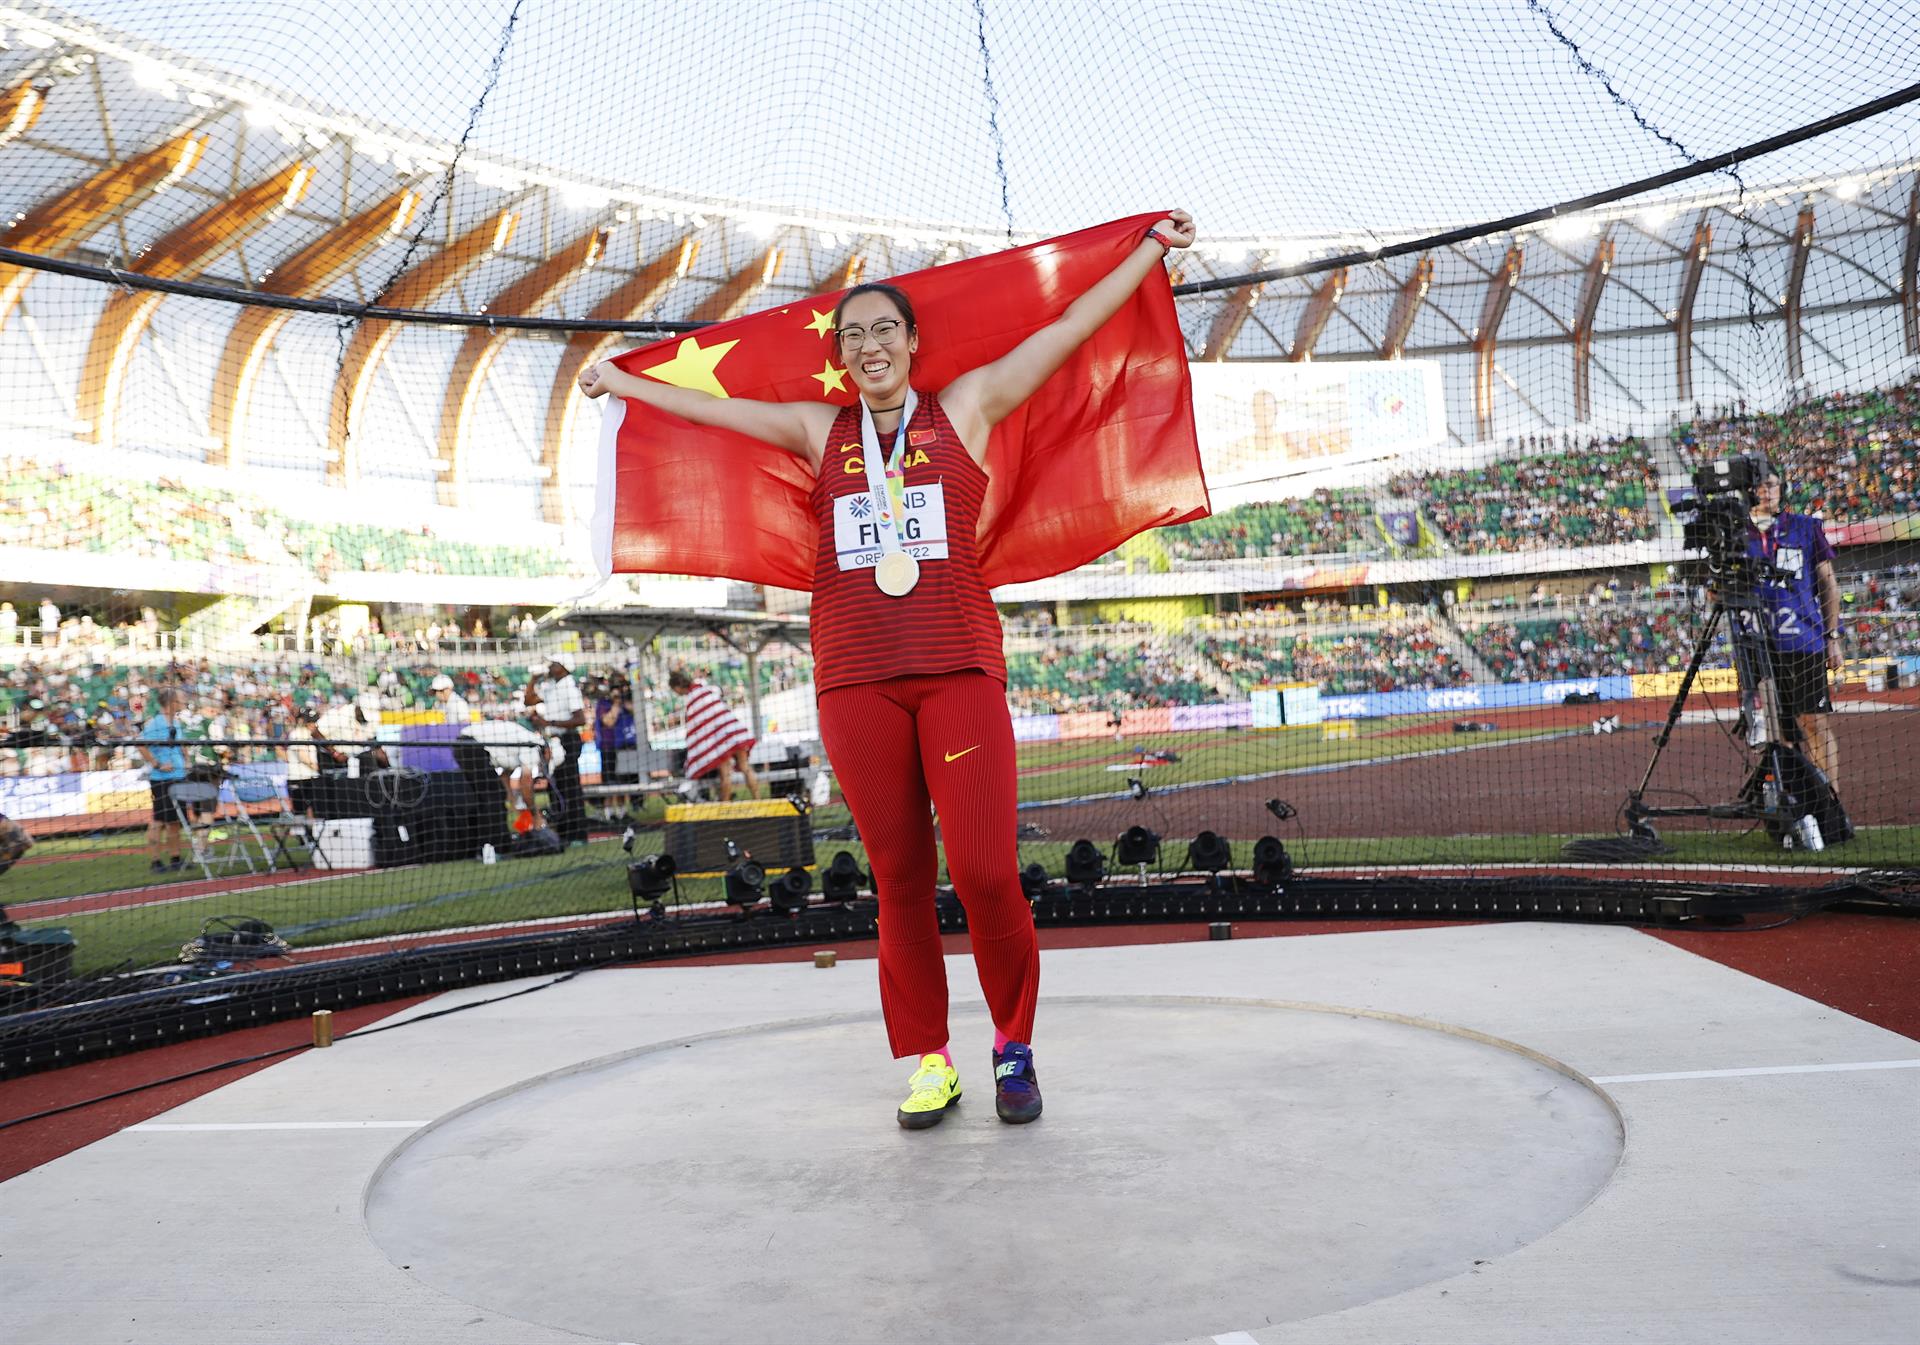 La medallista de oro Bin Feng de China posa para fotos con su medalla y bandera nacional después de la final de lanzamiento de disco femenino, durante el Campeonato Mundial de Atletismo Oregon, en Hayward Field, Estados Unidos. EFE/EPA/Robert Ghement
